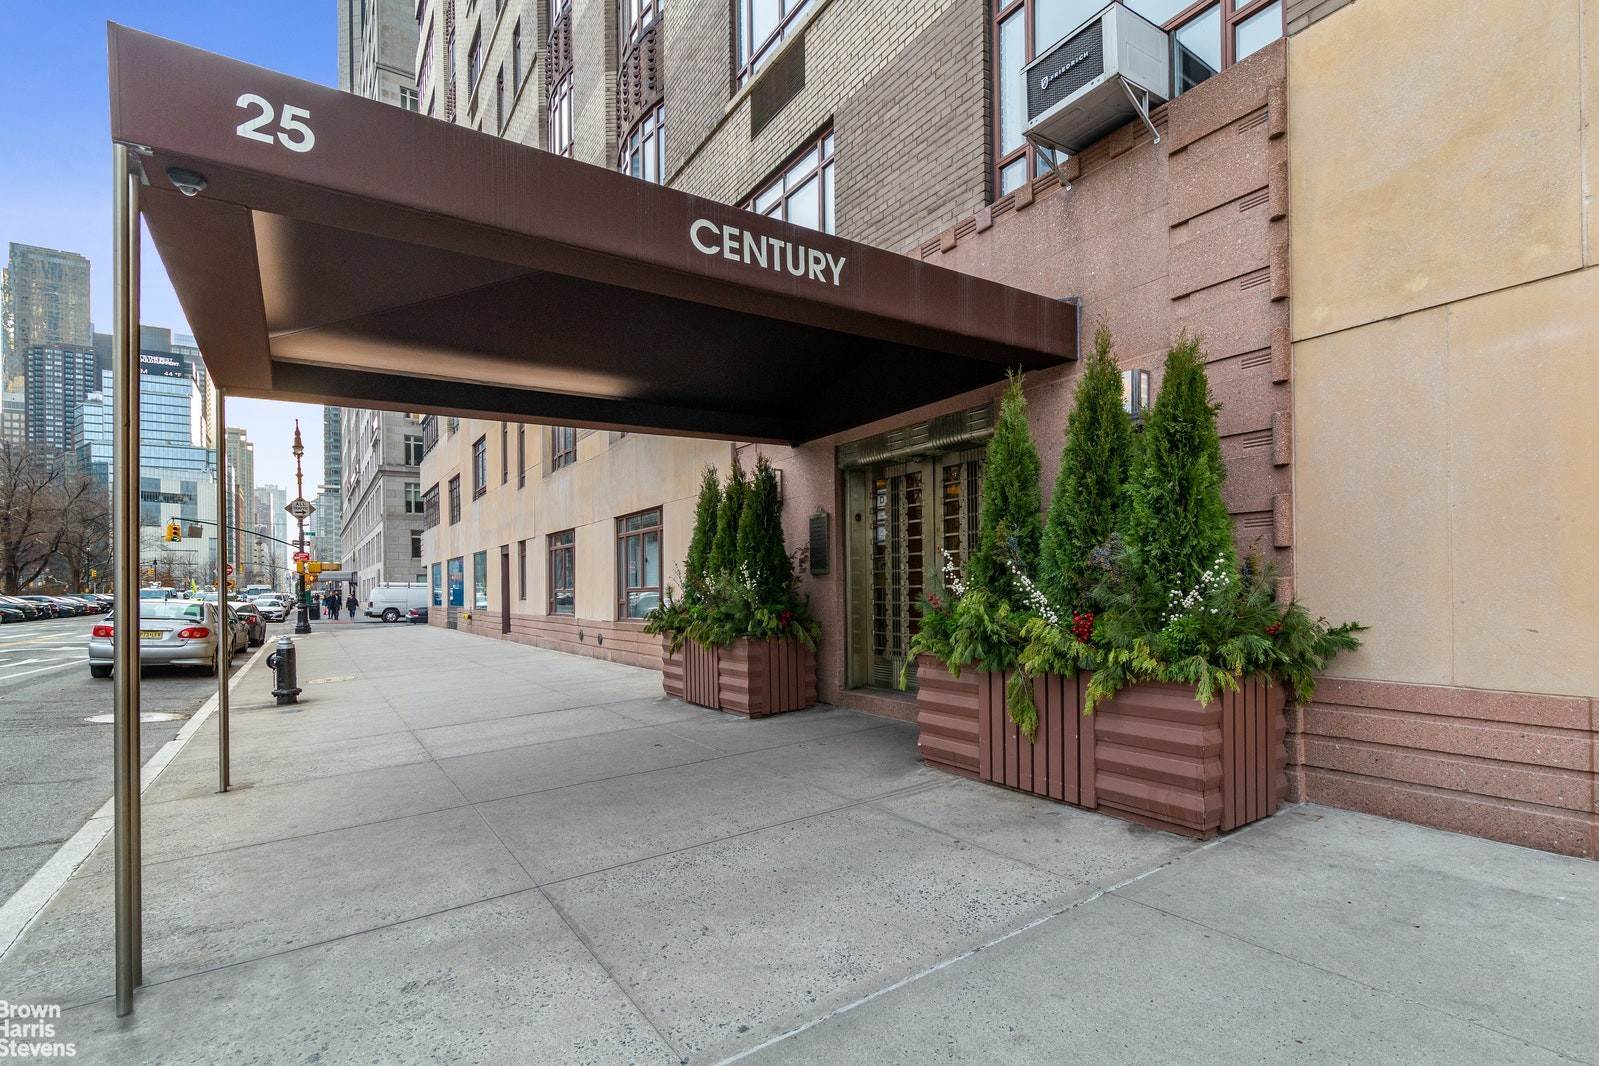 Condominium pour l Vente à Lincoln Square, Manhattan, NY 10023